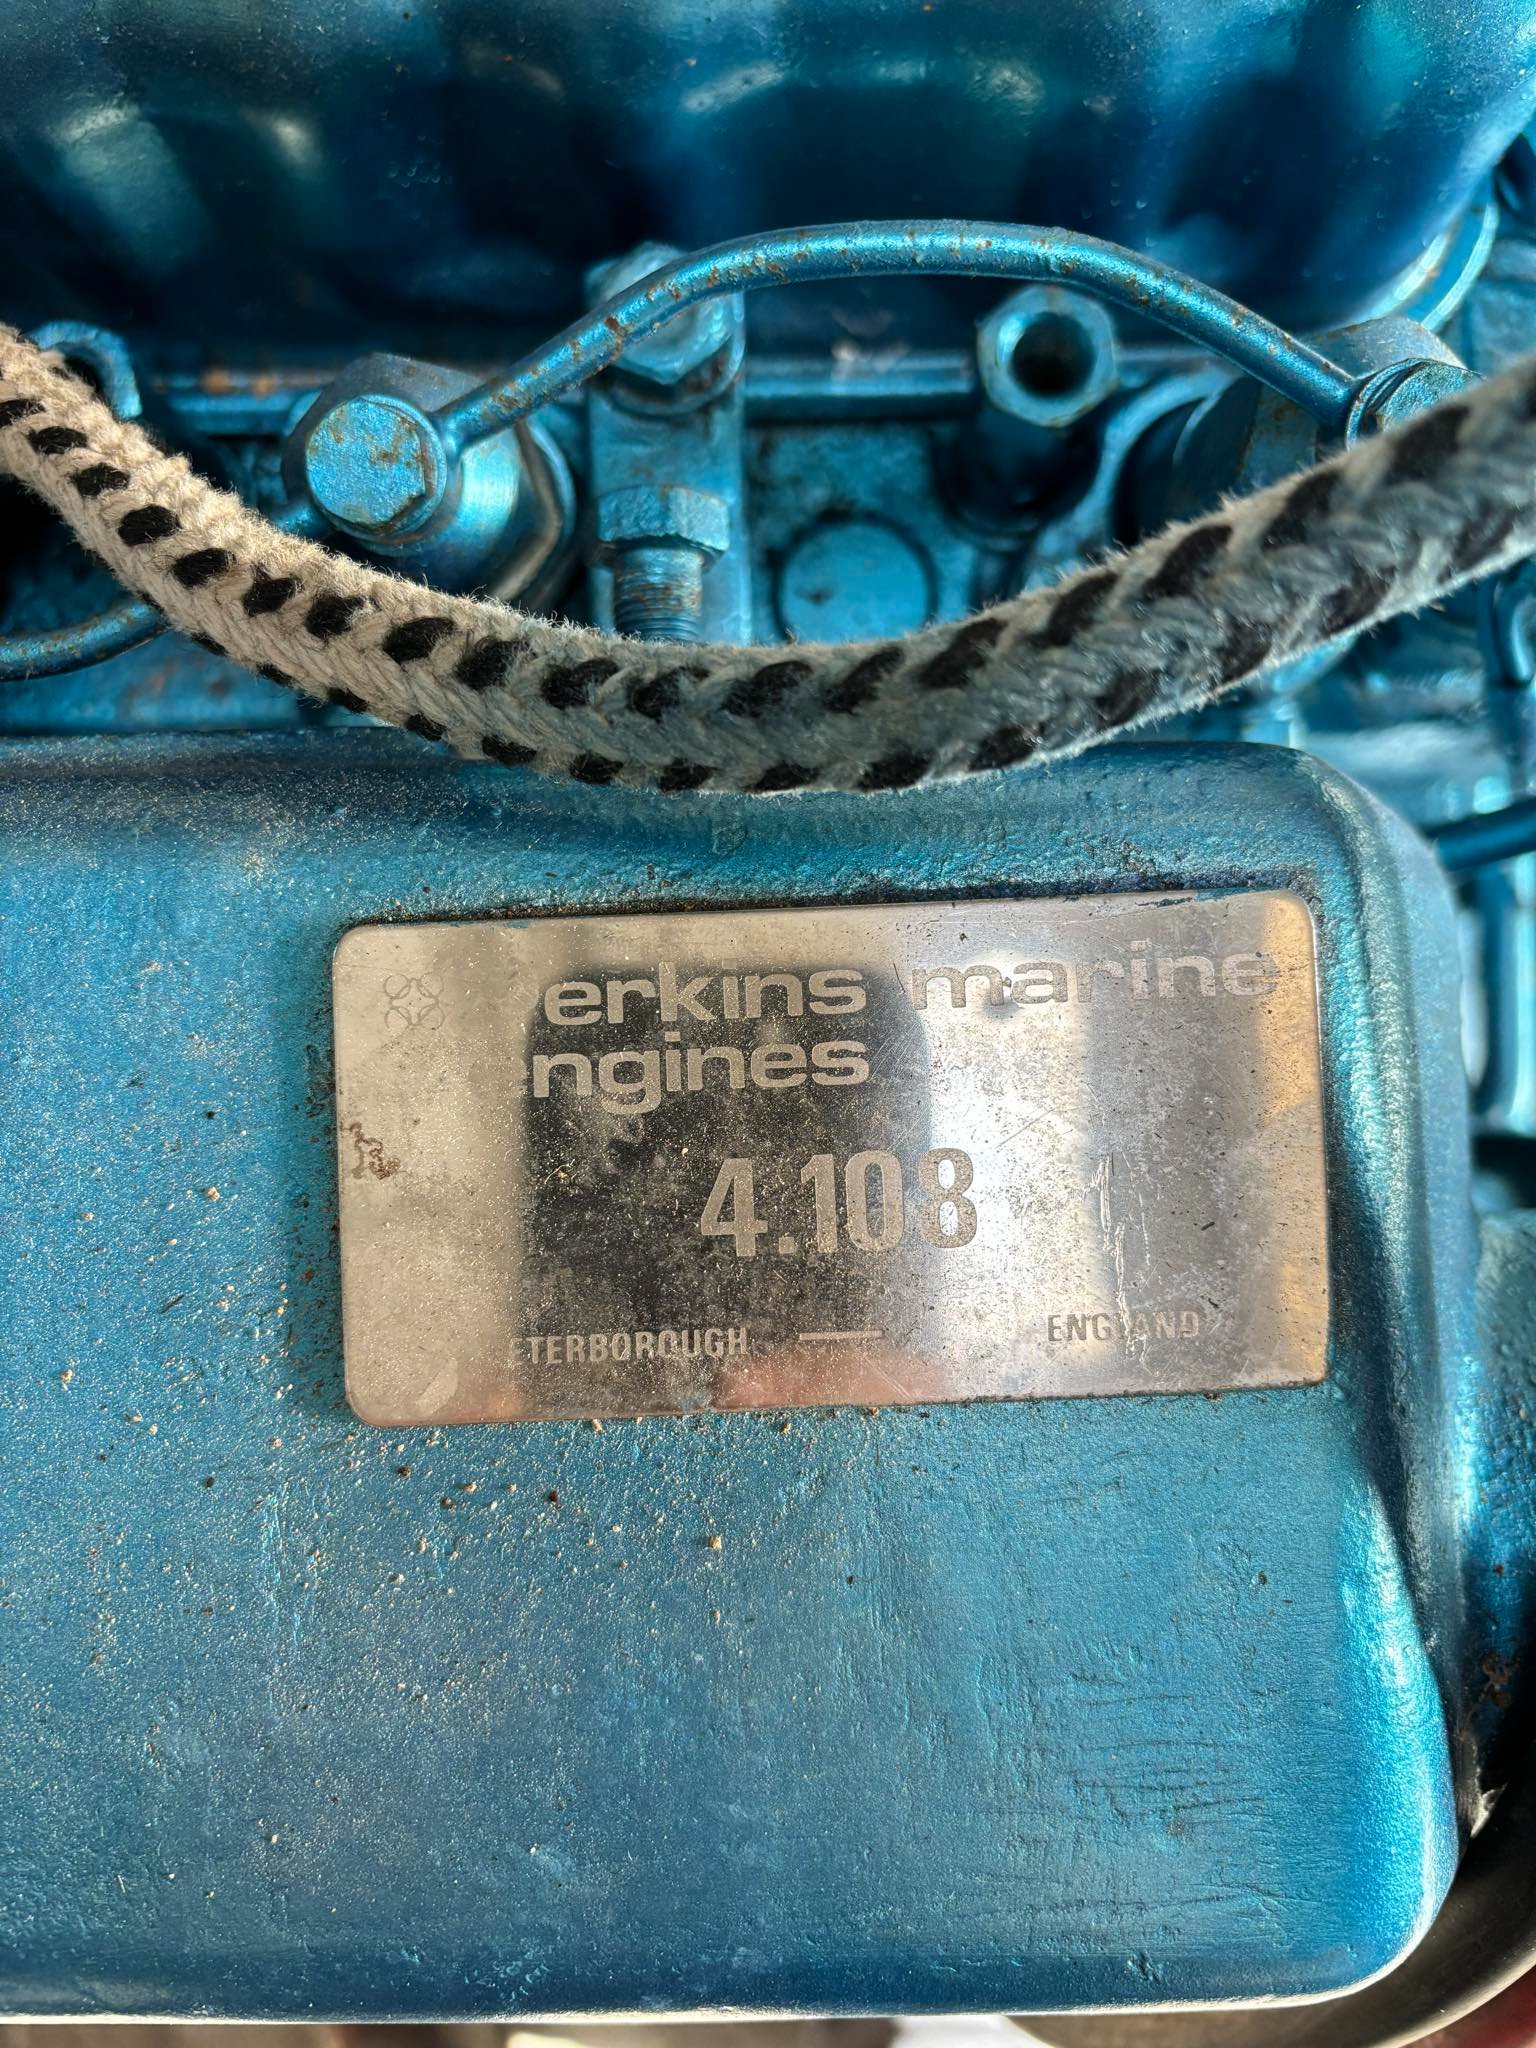 Perkins 4108 marine diesel